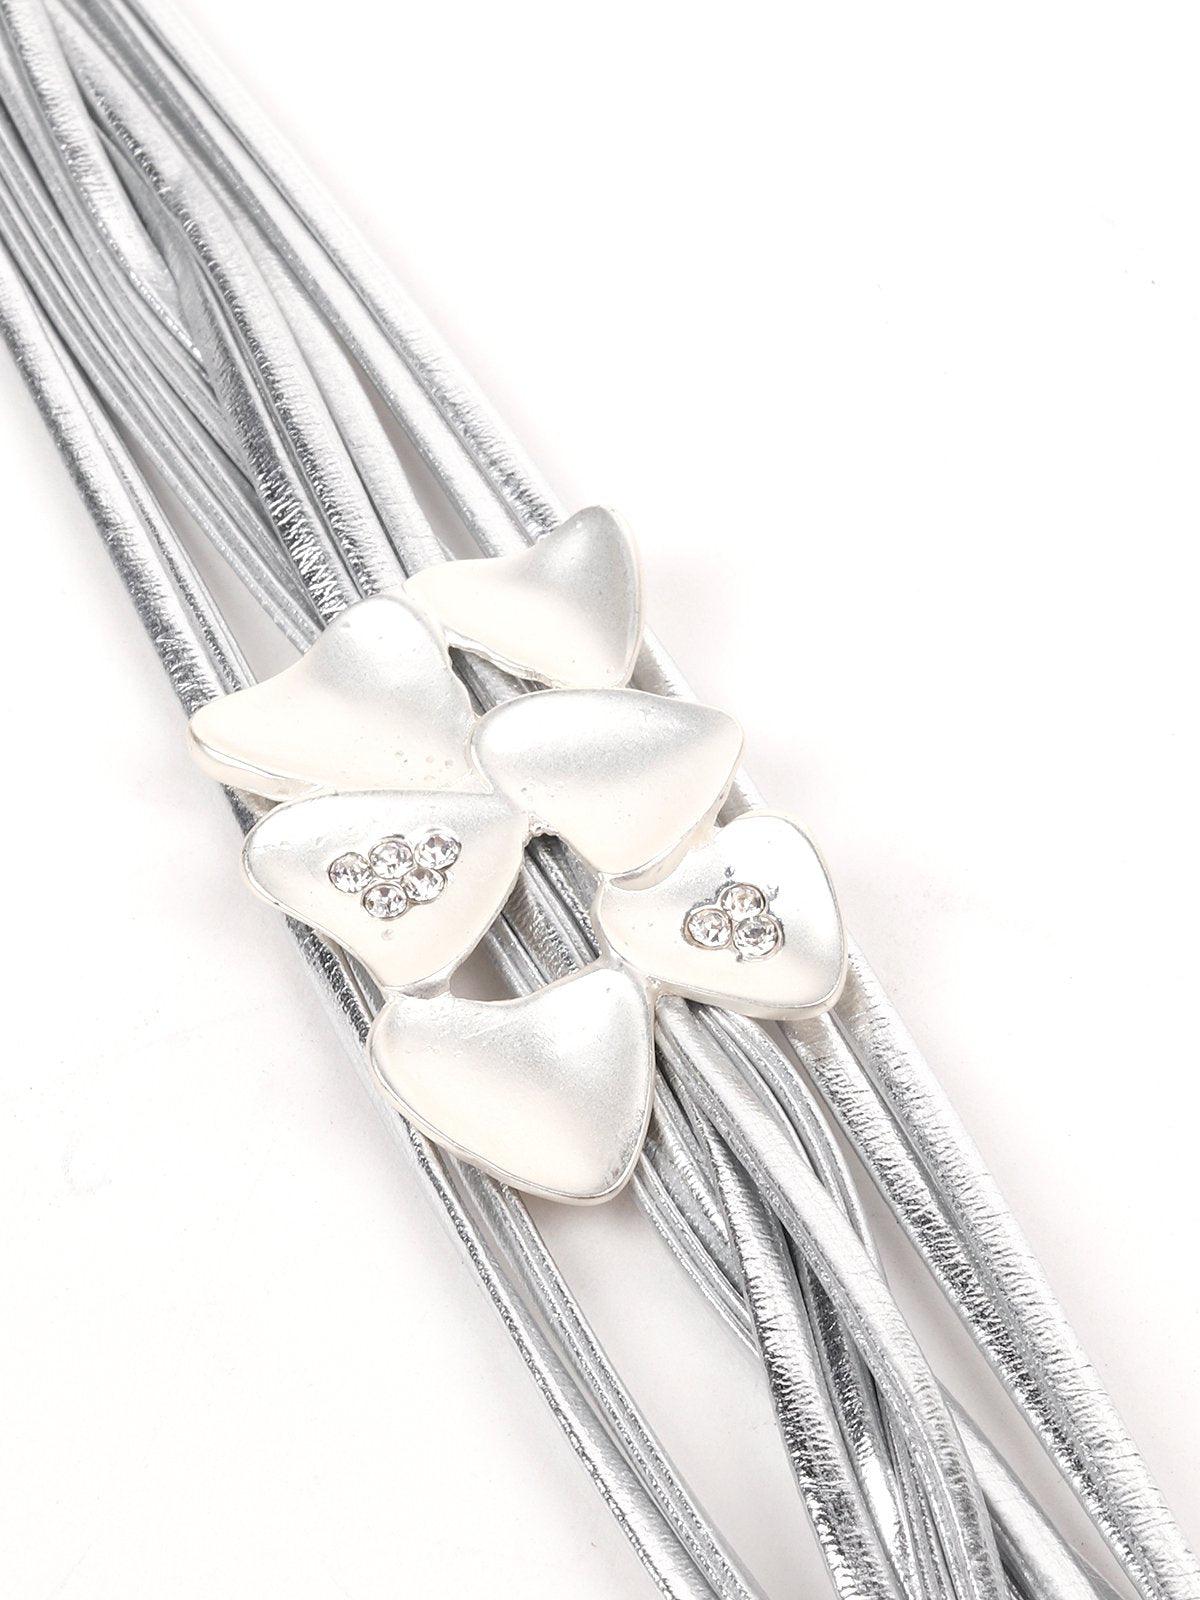 Women's Shiny Silver Tone Multi Layered Bracelet - Odette